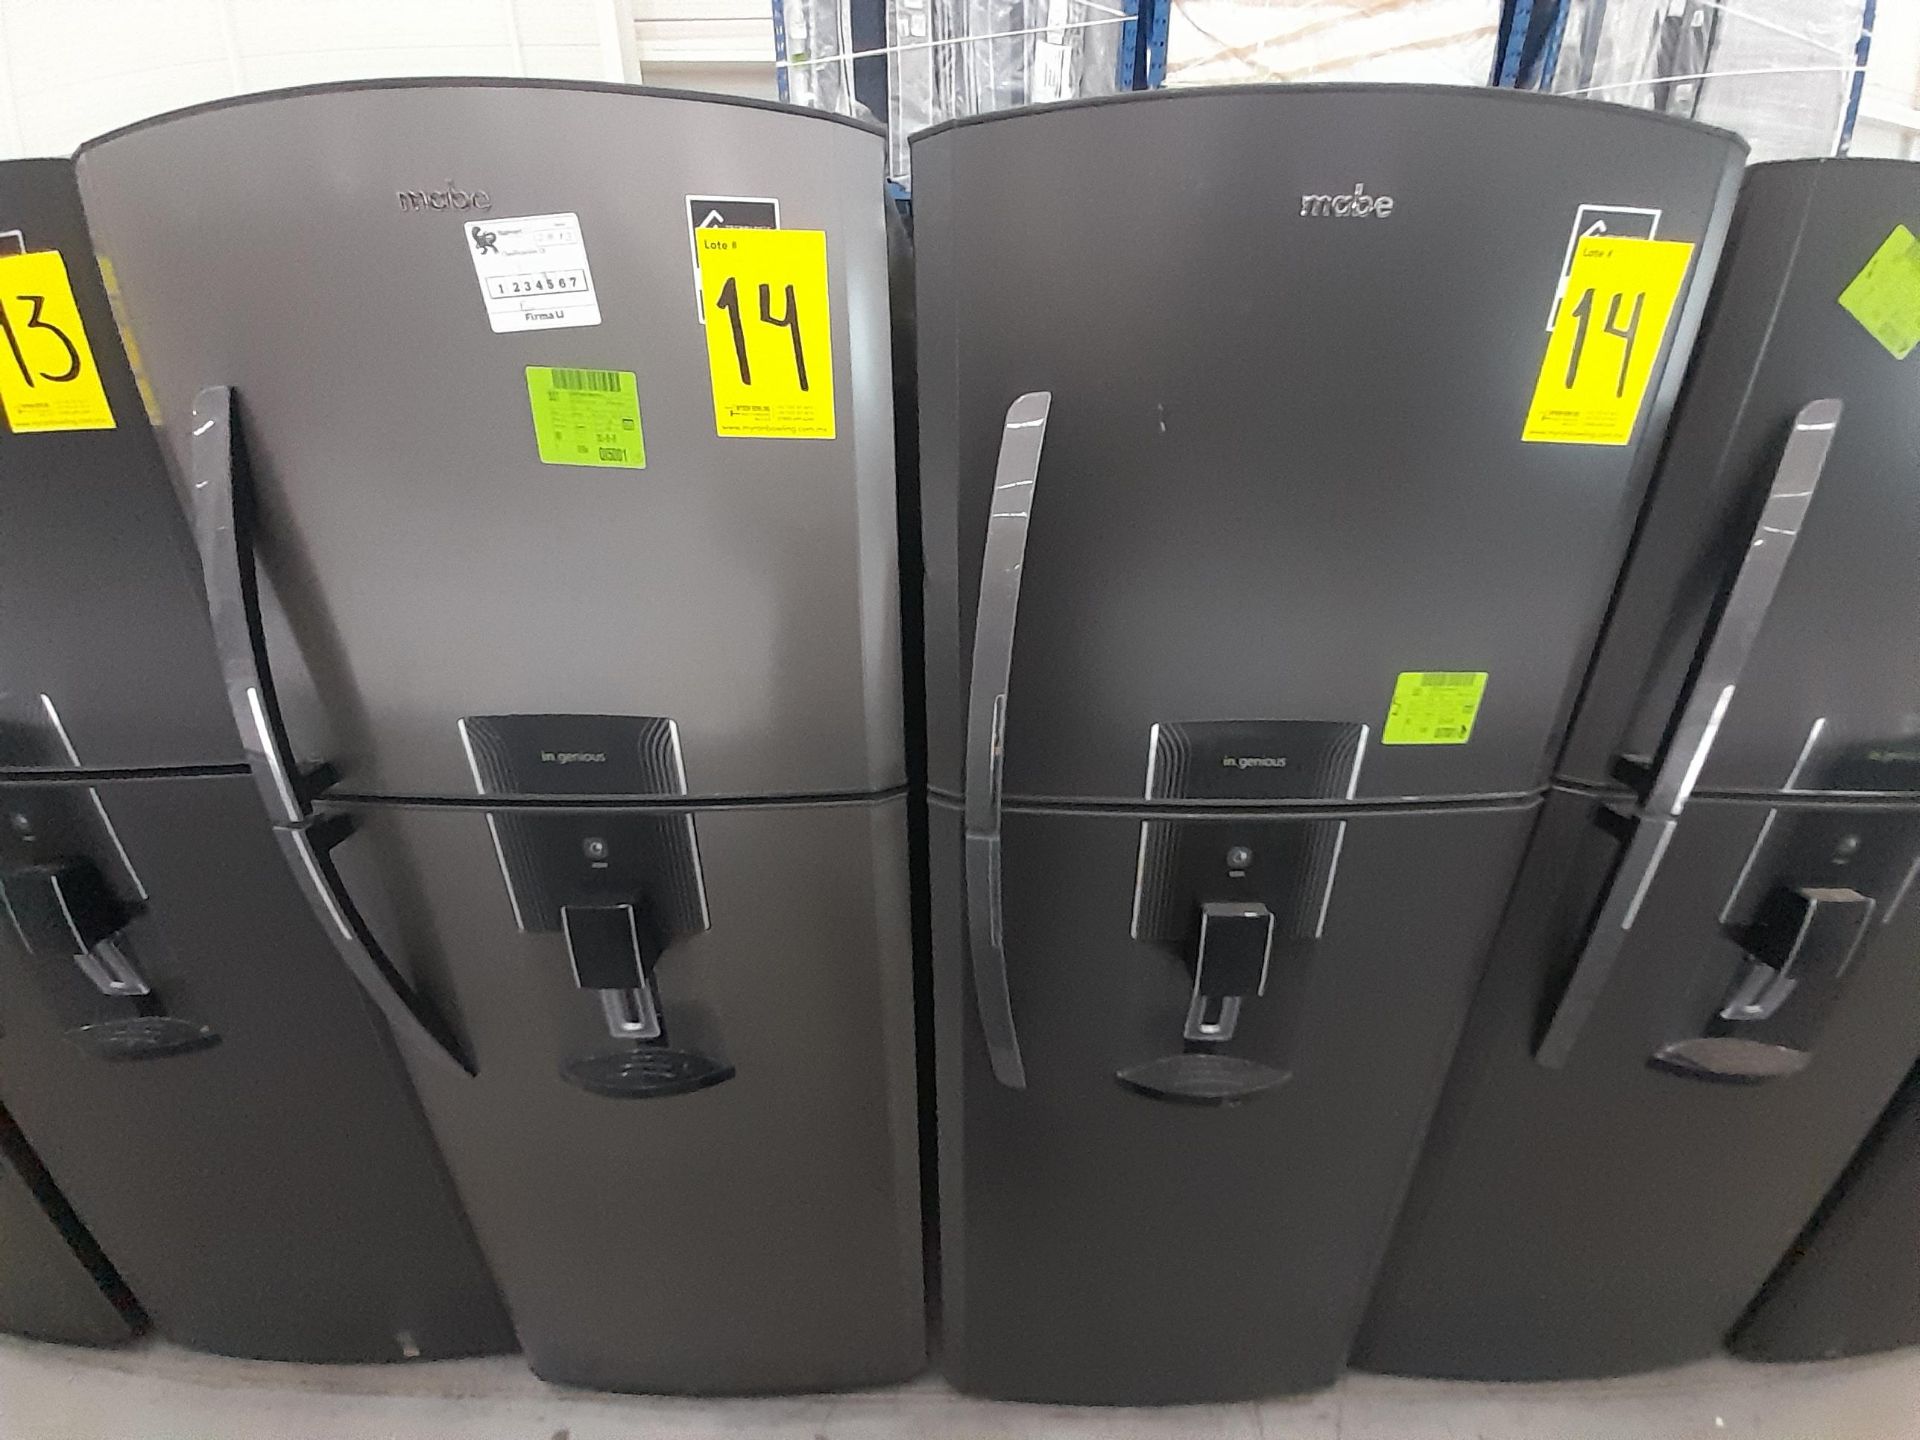 Lote de 2 Refrigeradores contiene: 1 Refrigerador con dispensador de agua Marca MABE, Modelo RM